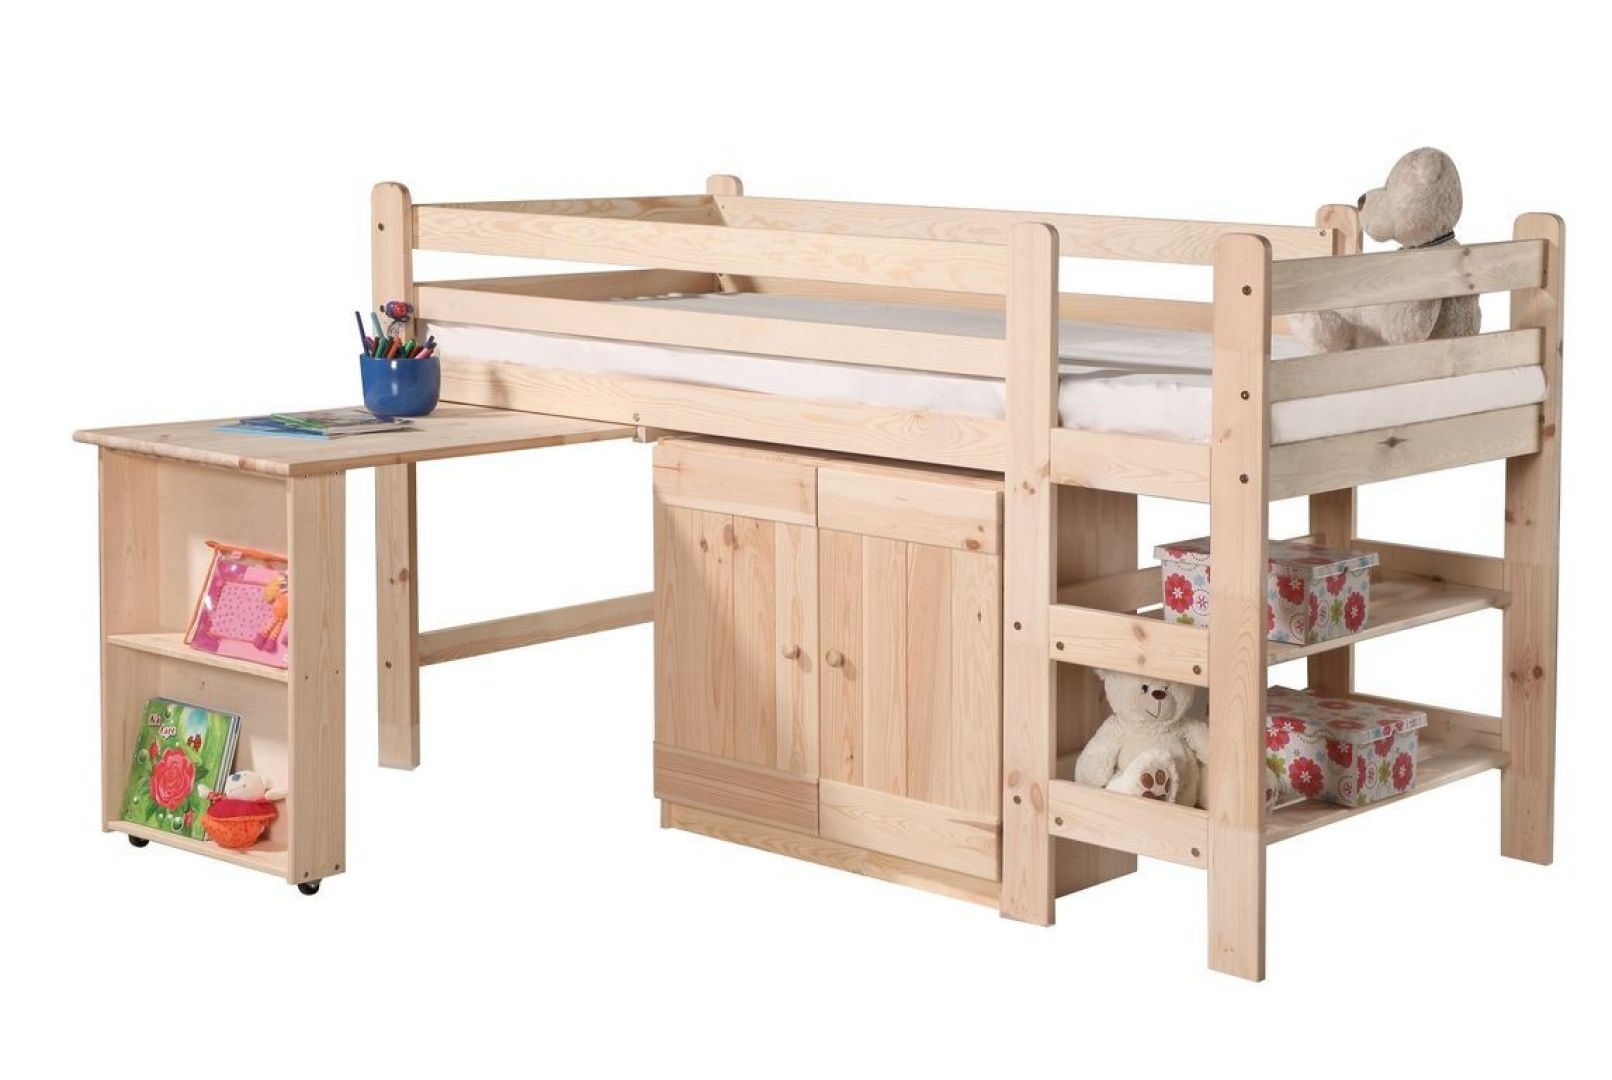 Drewniane łóżko z biurkiem, szafką i regałem. Fot. Pinio